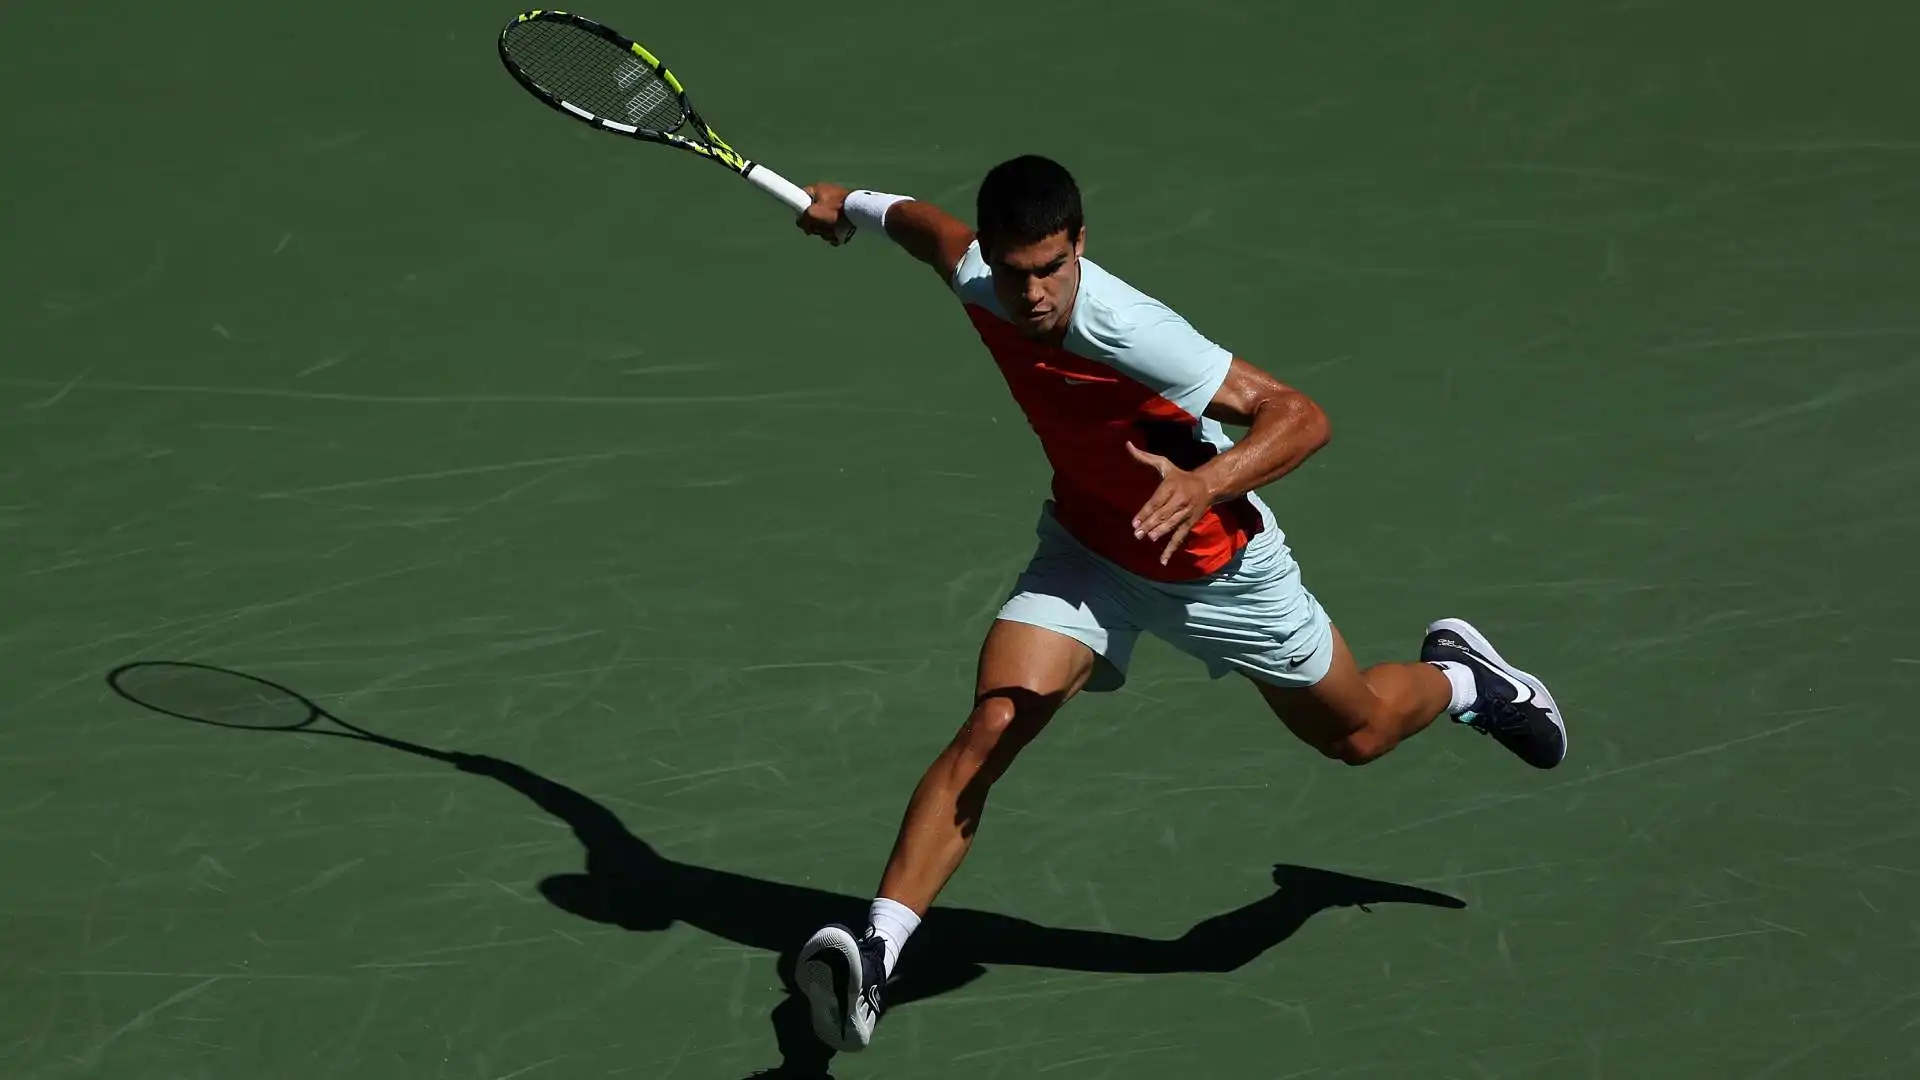 Il tennista spagnolo ha sfoggiato pose plastiche nel match d'esordio degli US Open